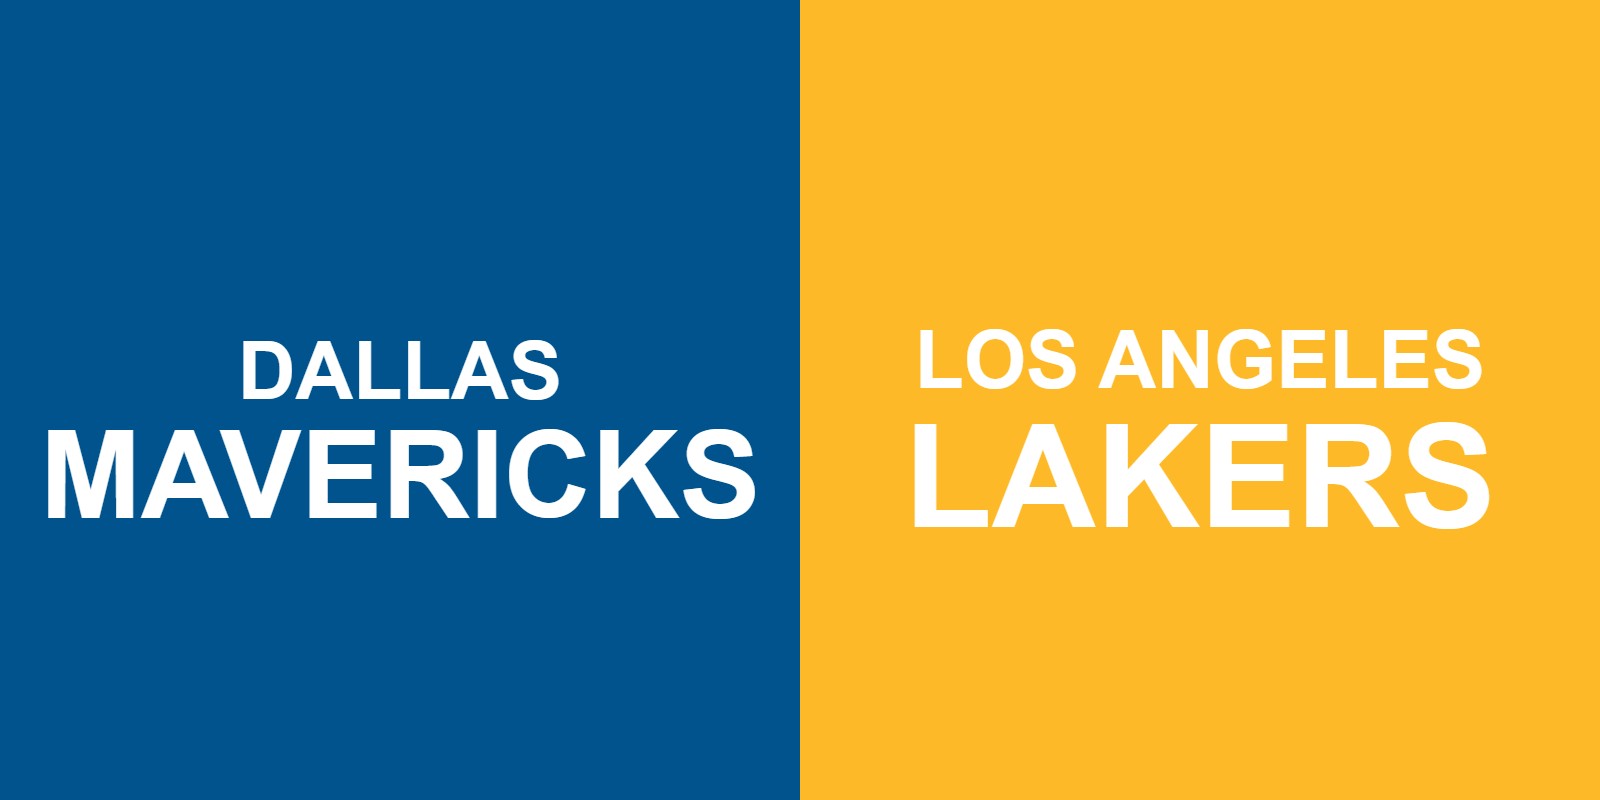 Mavericks vs Lakers